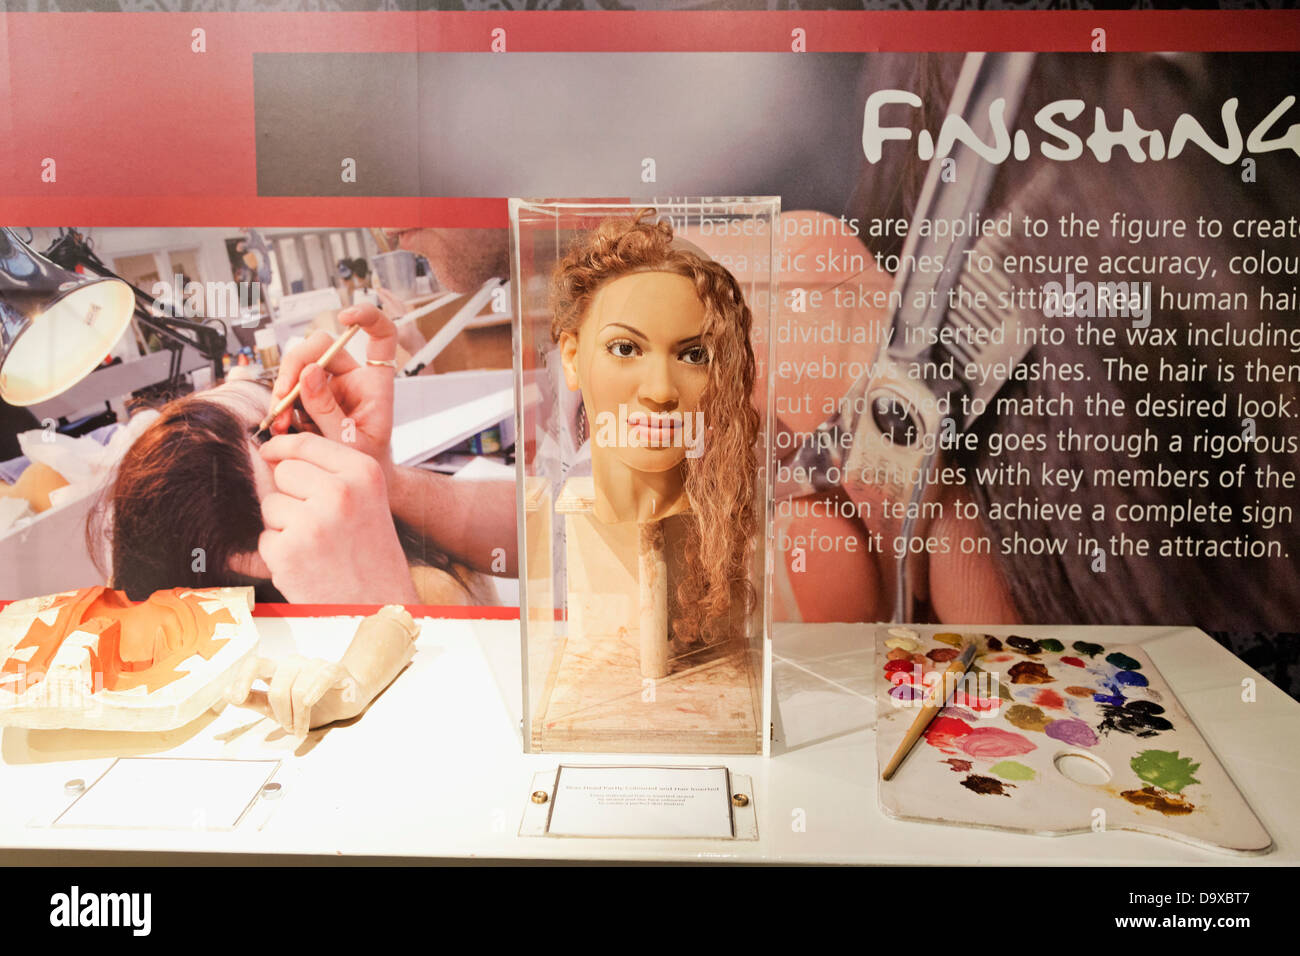 Großbritannien, England, London, Madame Tussauds, Ausstellung über die Wachsfigur Making-of der Popstar Beyonce Kopf Stockfoto